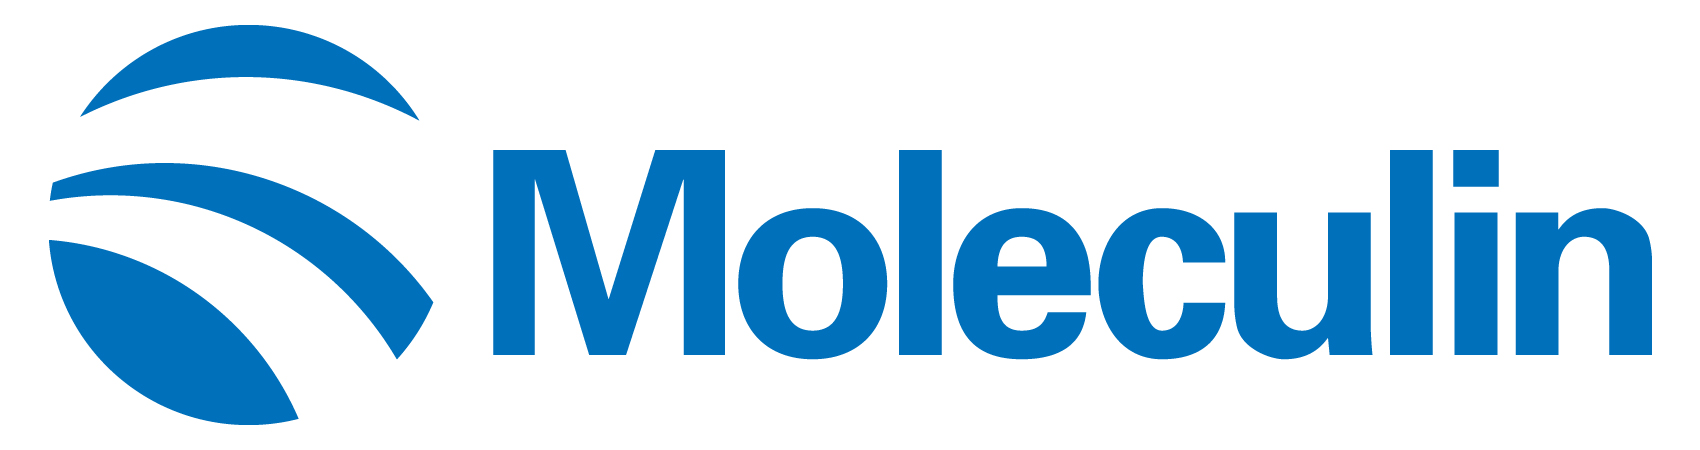 moleculin-logo_horiza53.jpg